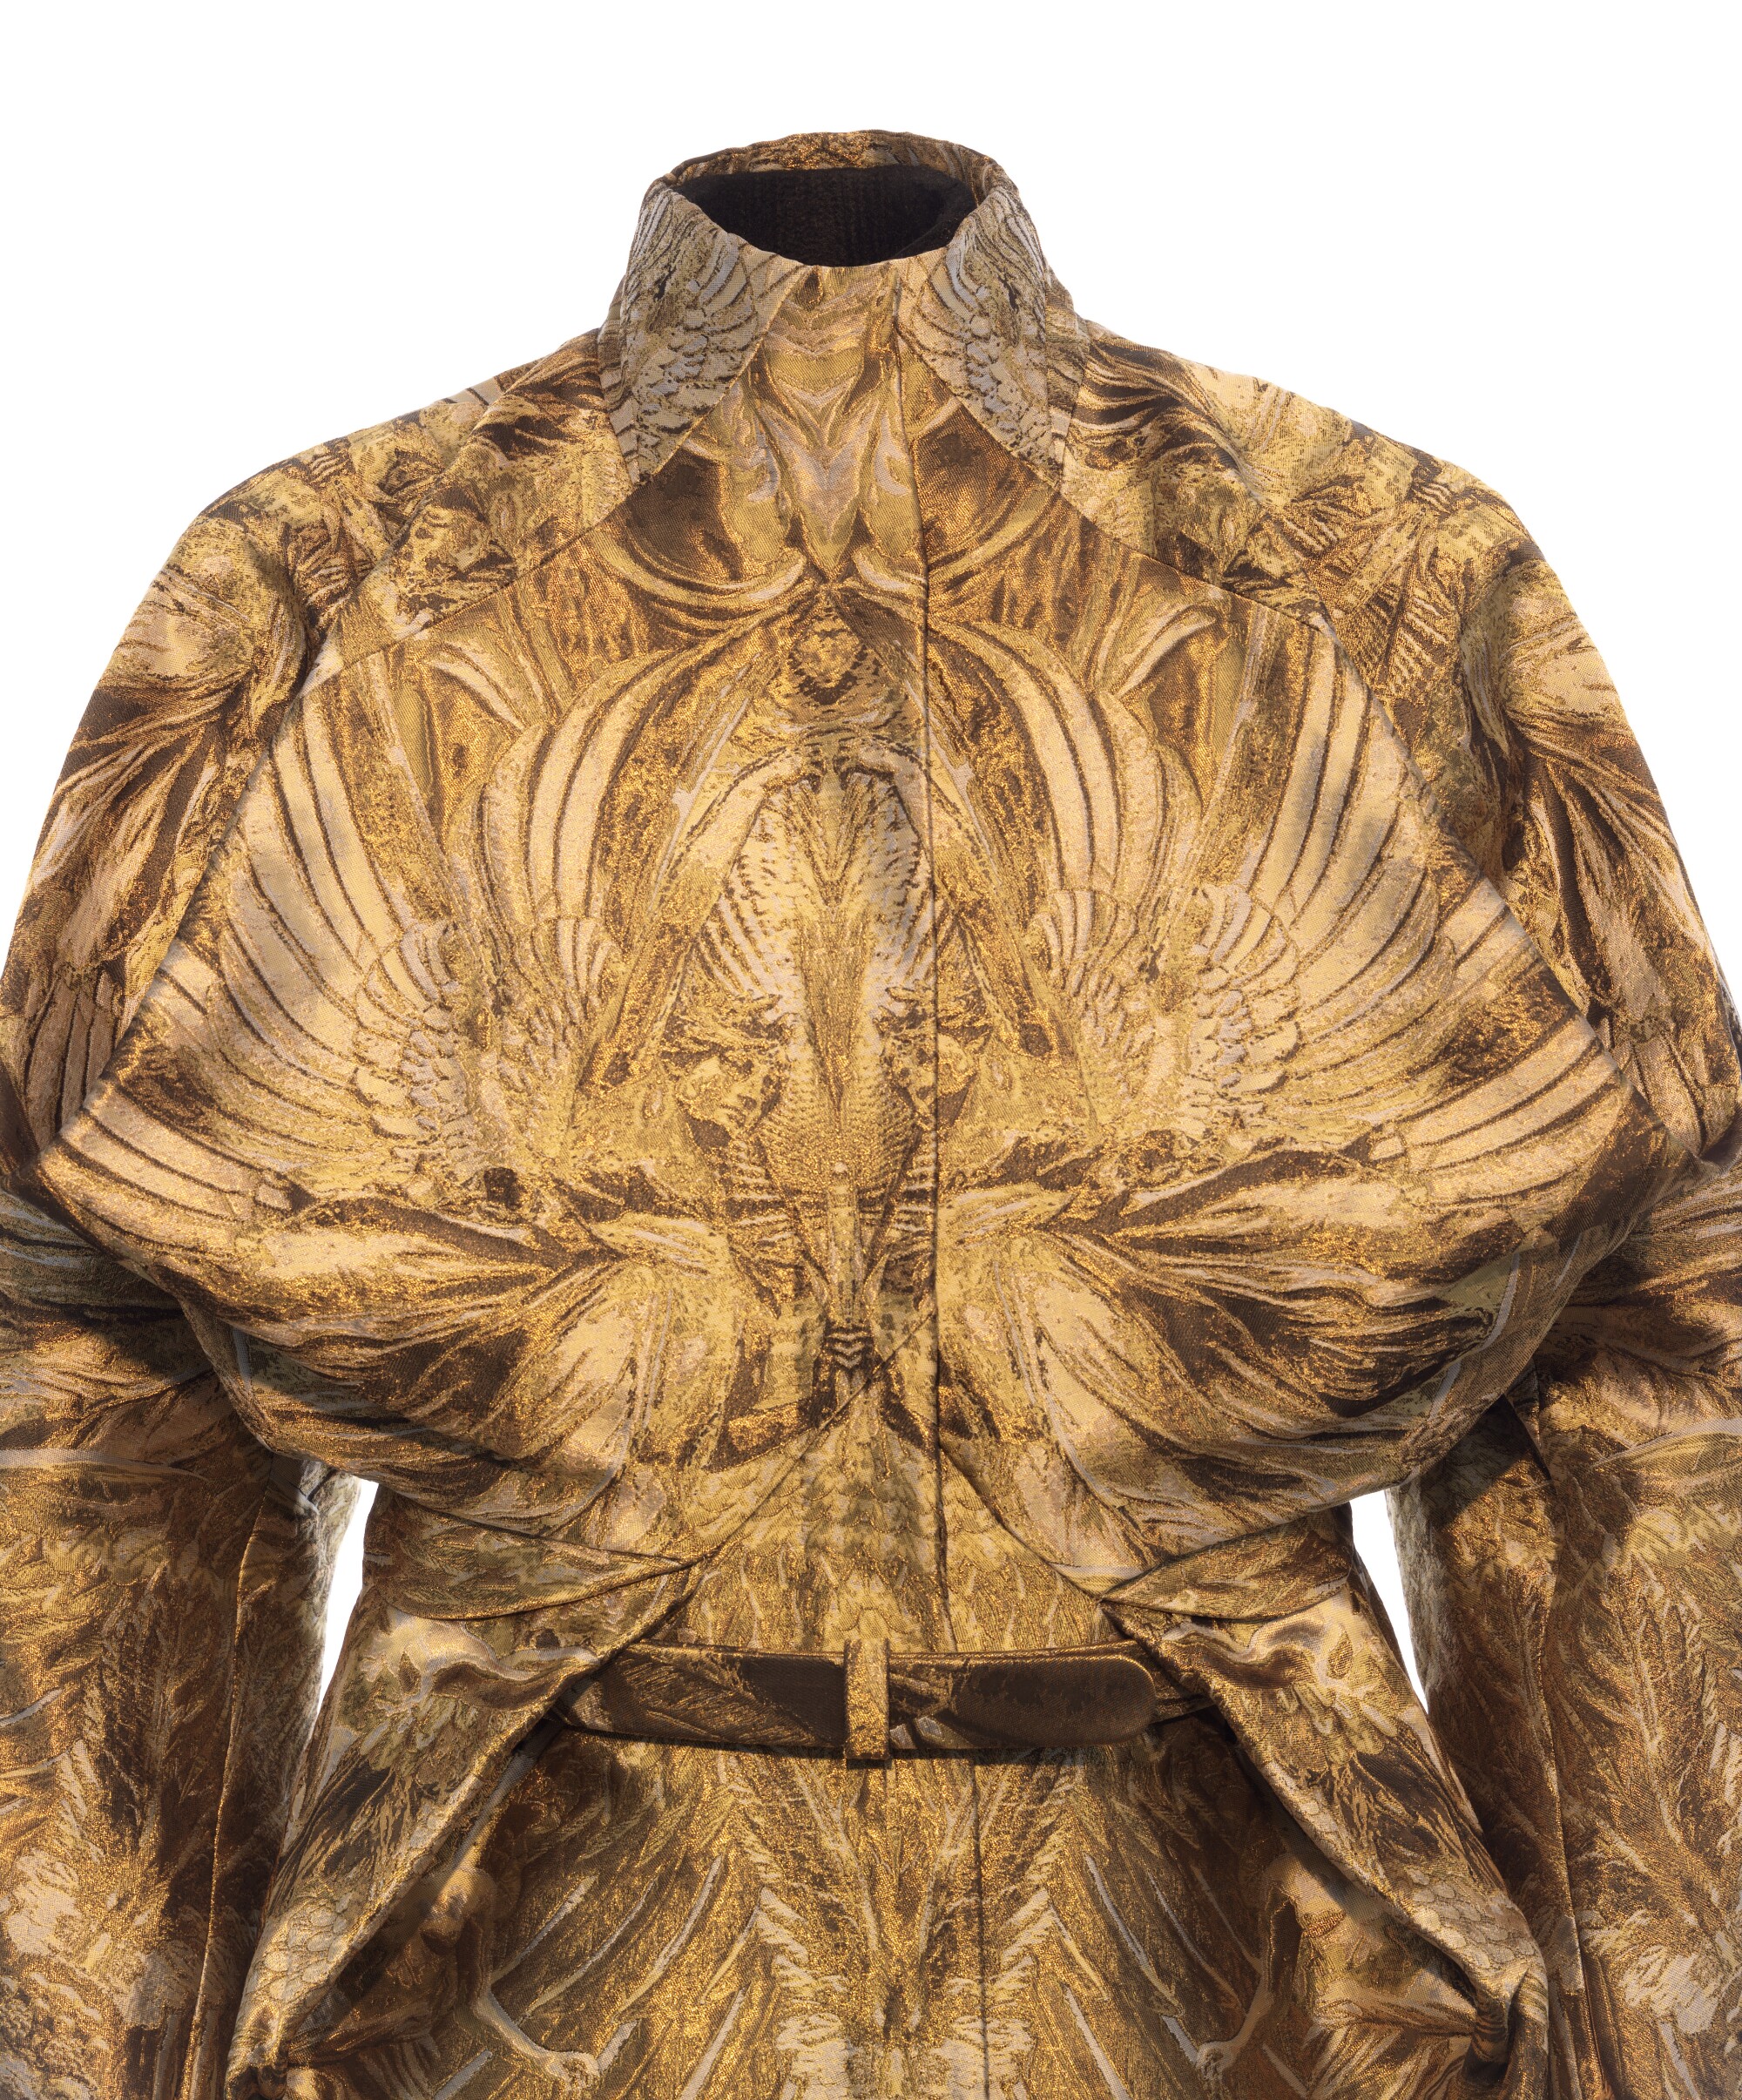 4अलेक्जेंडर मैक्वीन, महिला जैकेट (विस्तार) शीर्षकहीन (एन्जिल्स और दानव) संग्रह से